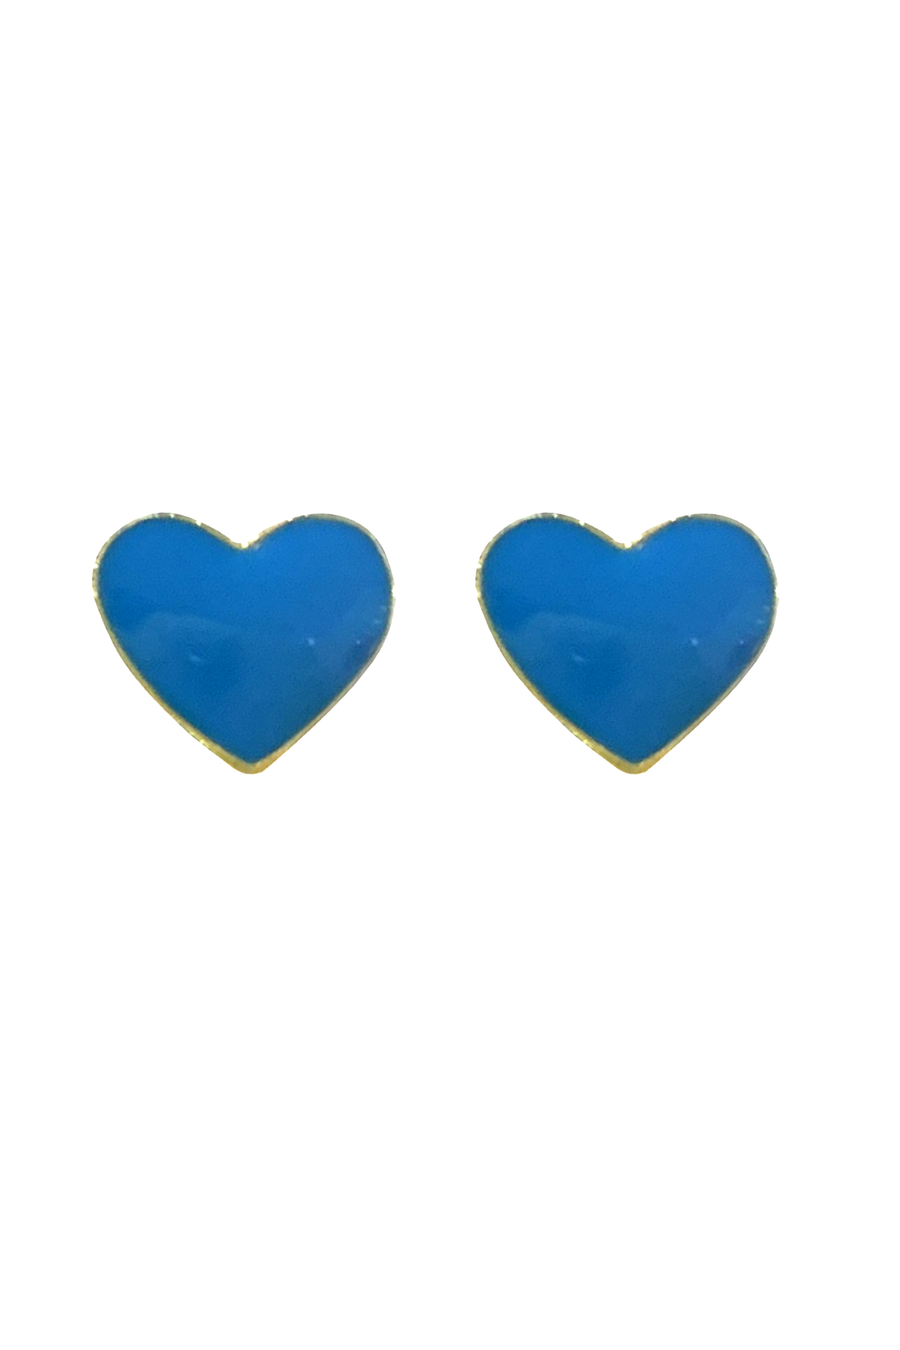 Enamel Heart Earrings - Blue - Shop Yu Fashion